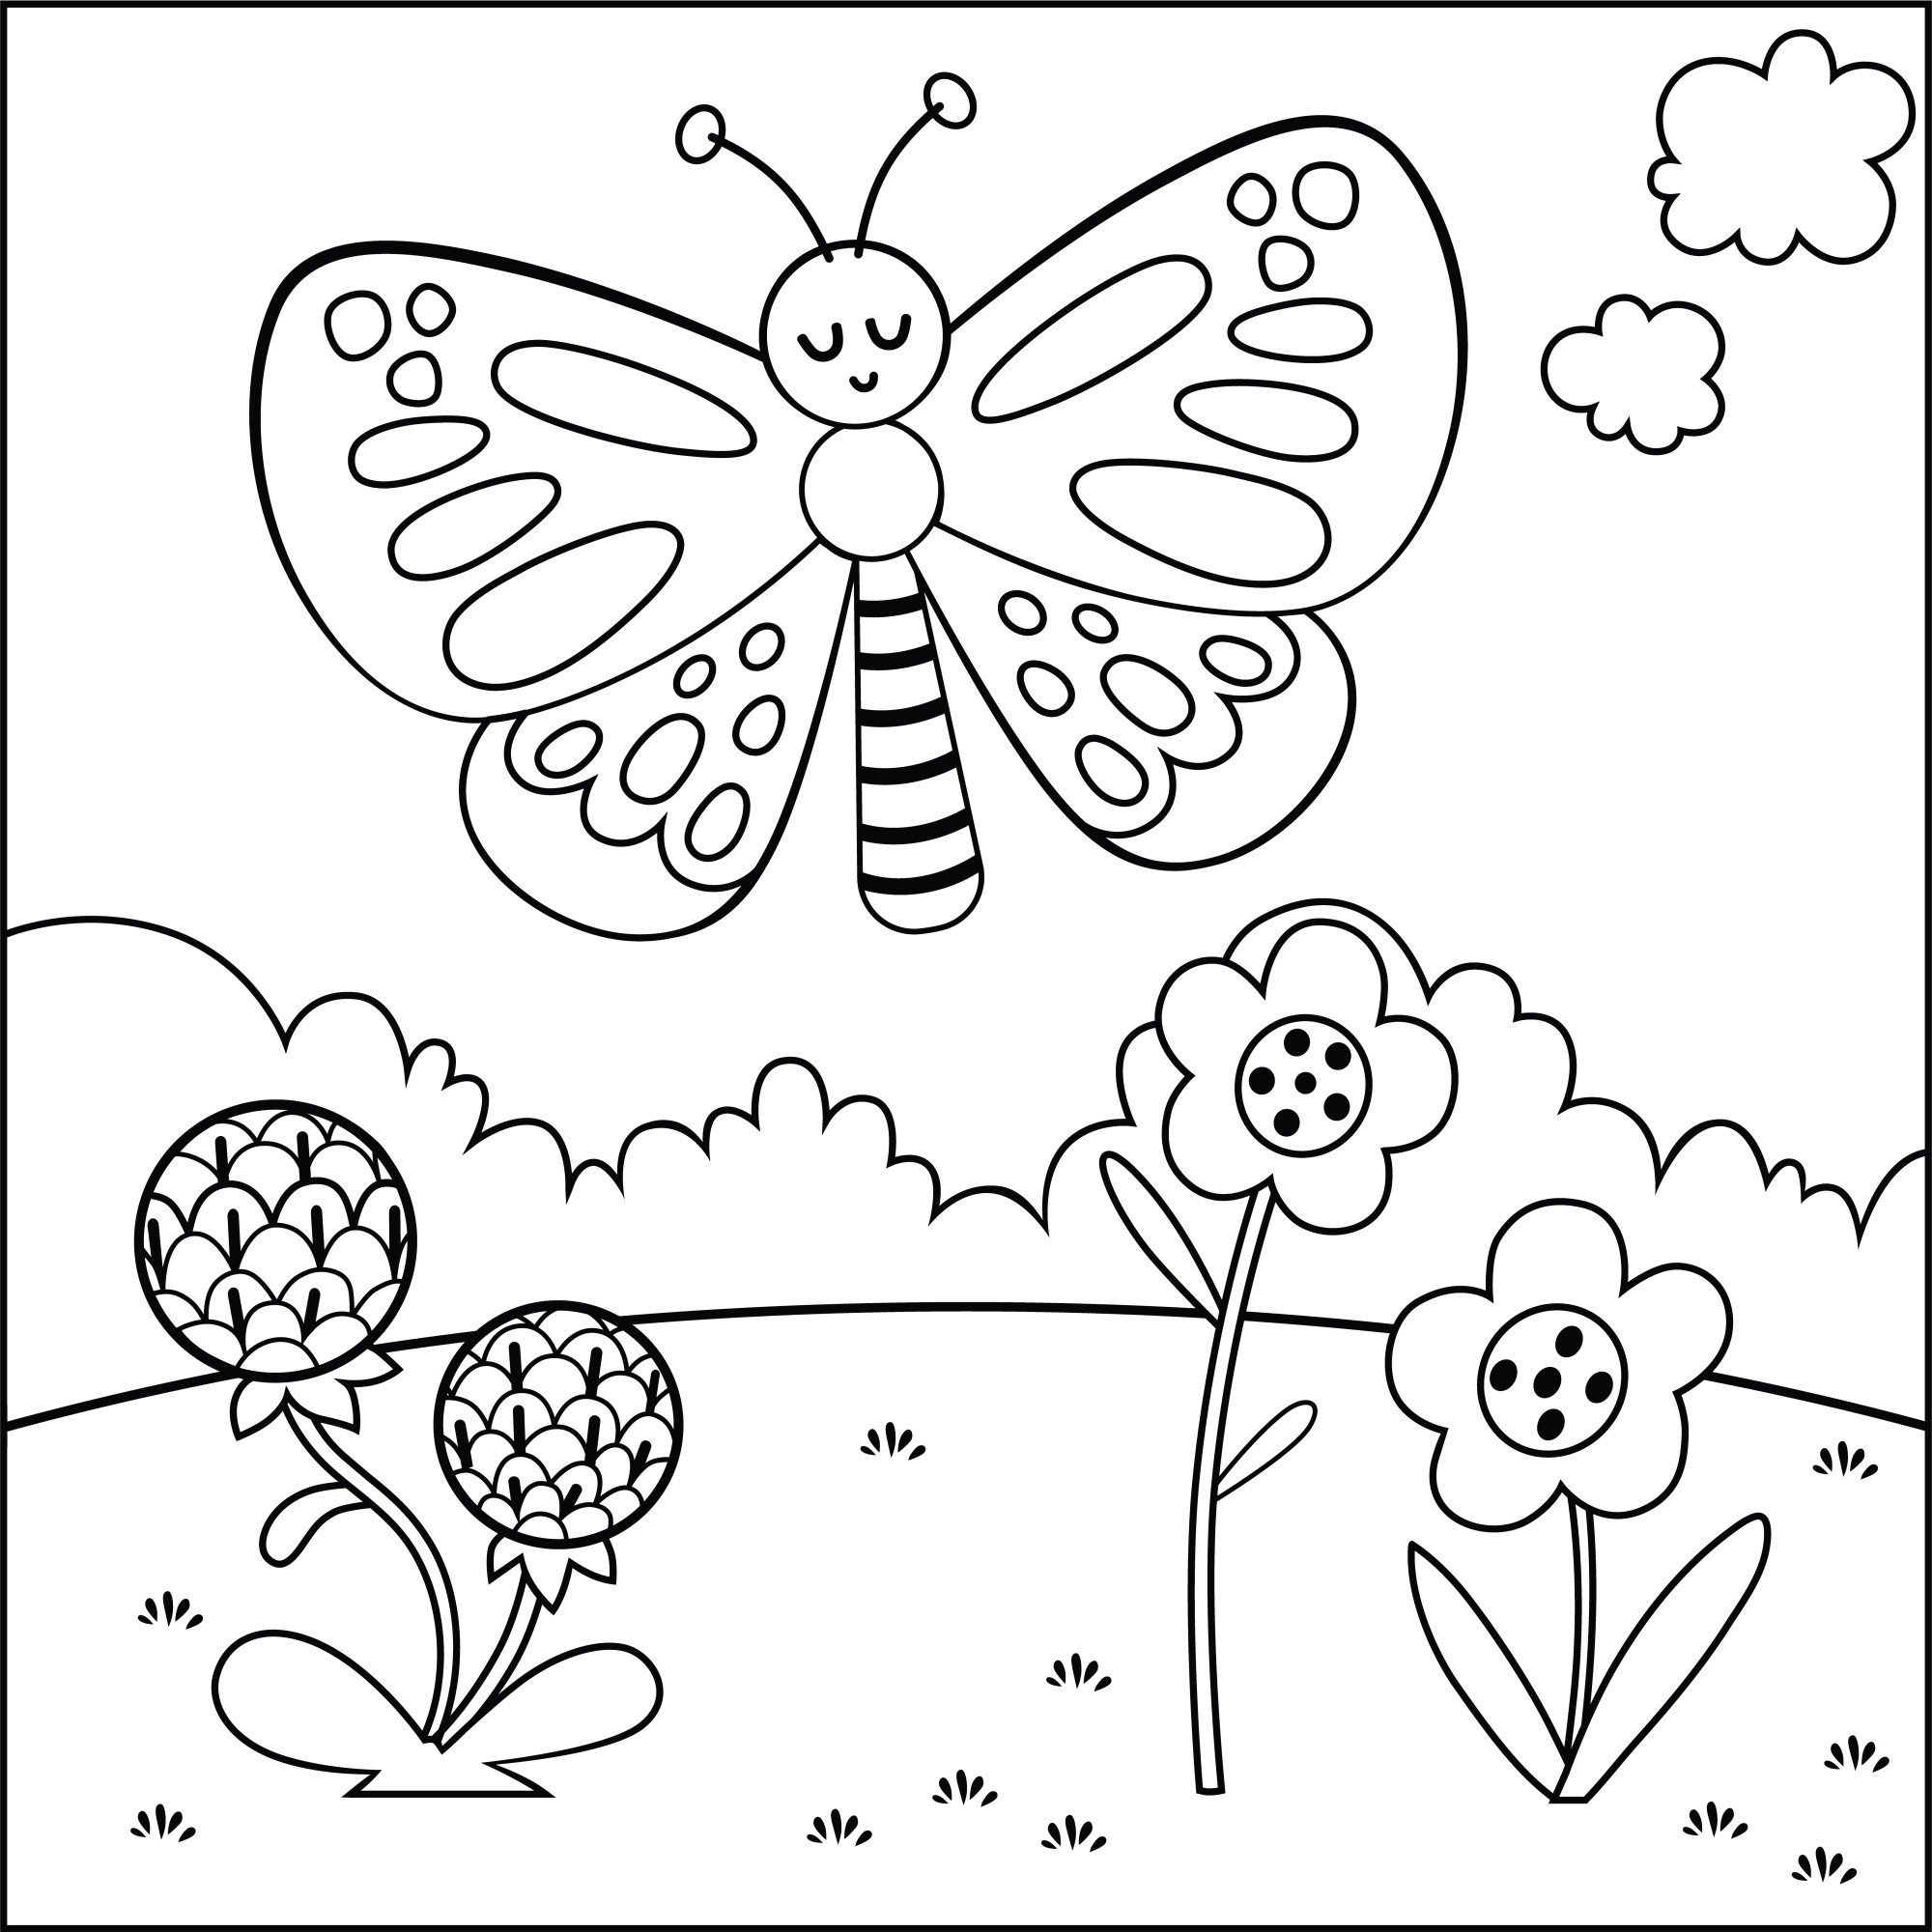 Раскраска для детей: бабочка в поле с цветами на фоне облаков